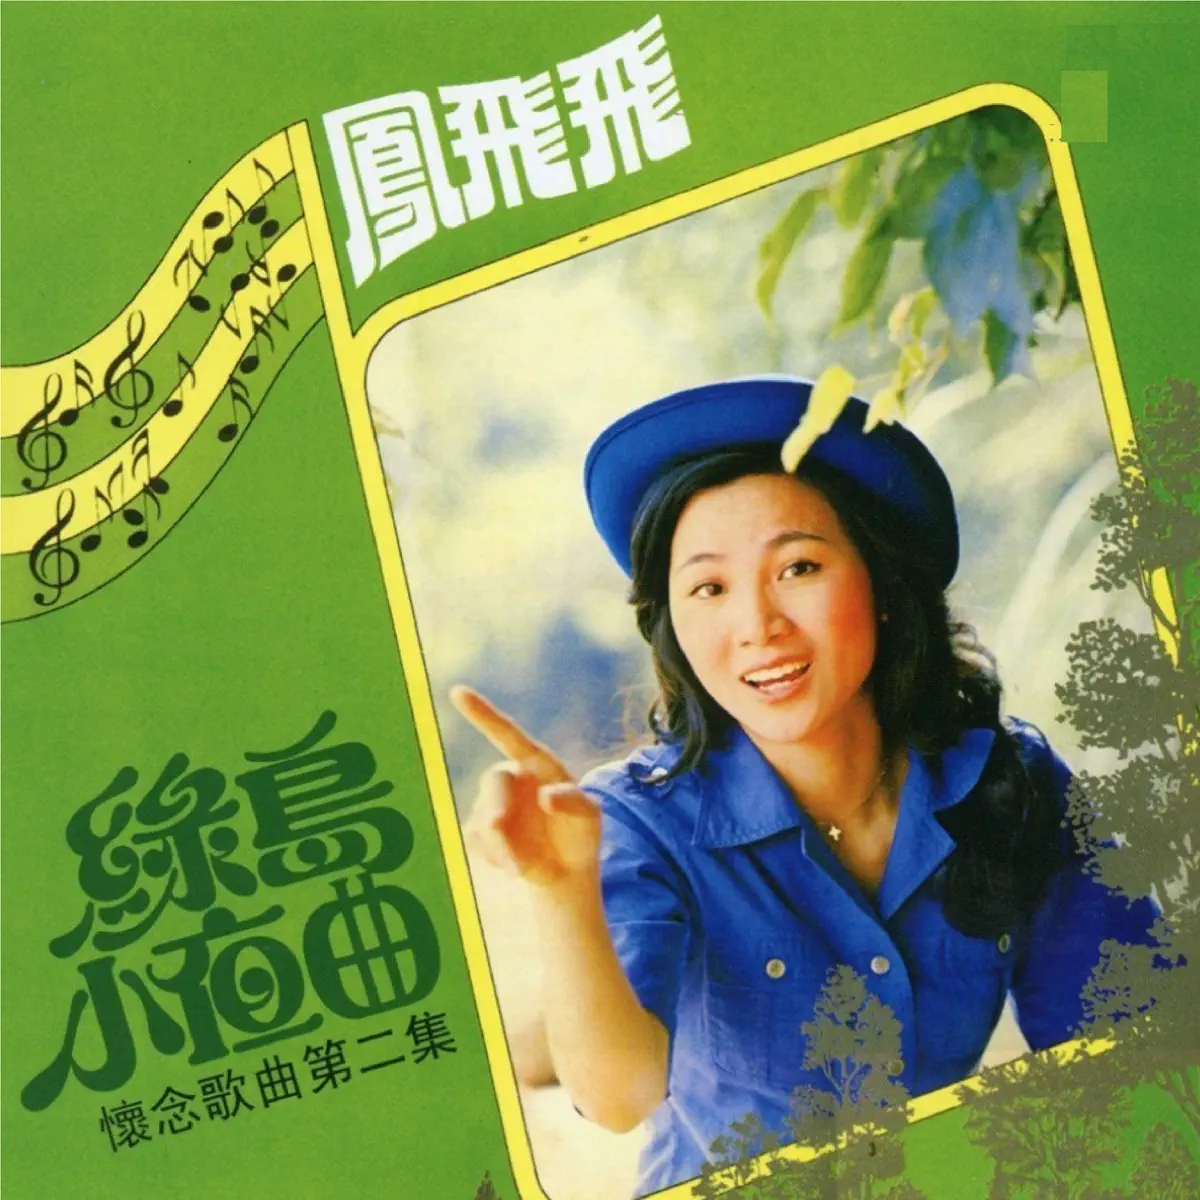 凤飞飞 - 绿岛小夜曲 (1976) [iTunes Plus AAC M4A]-新房子